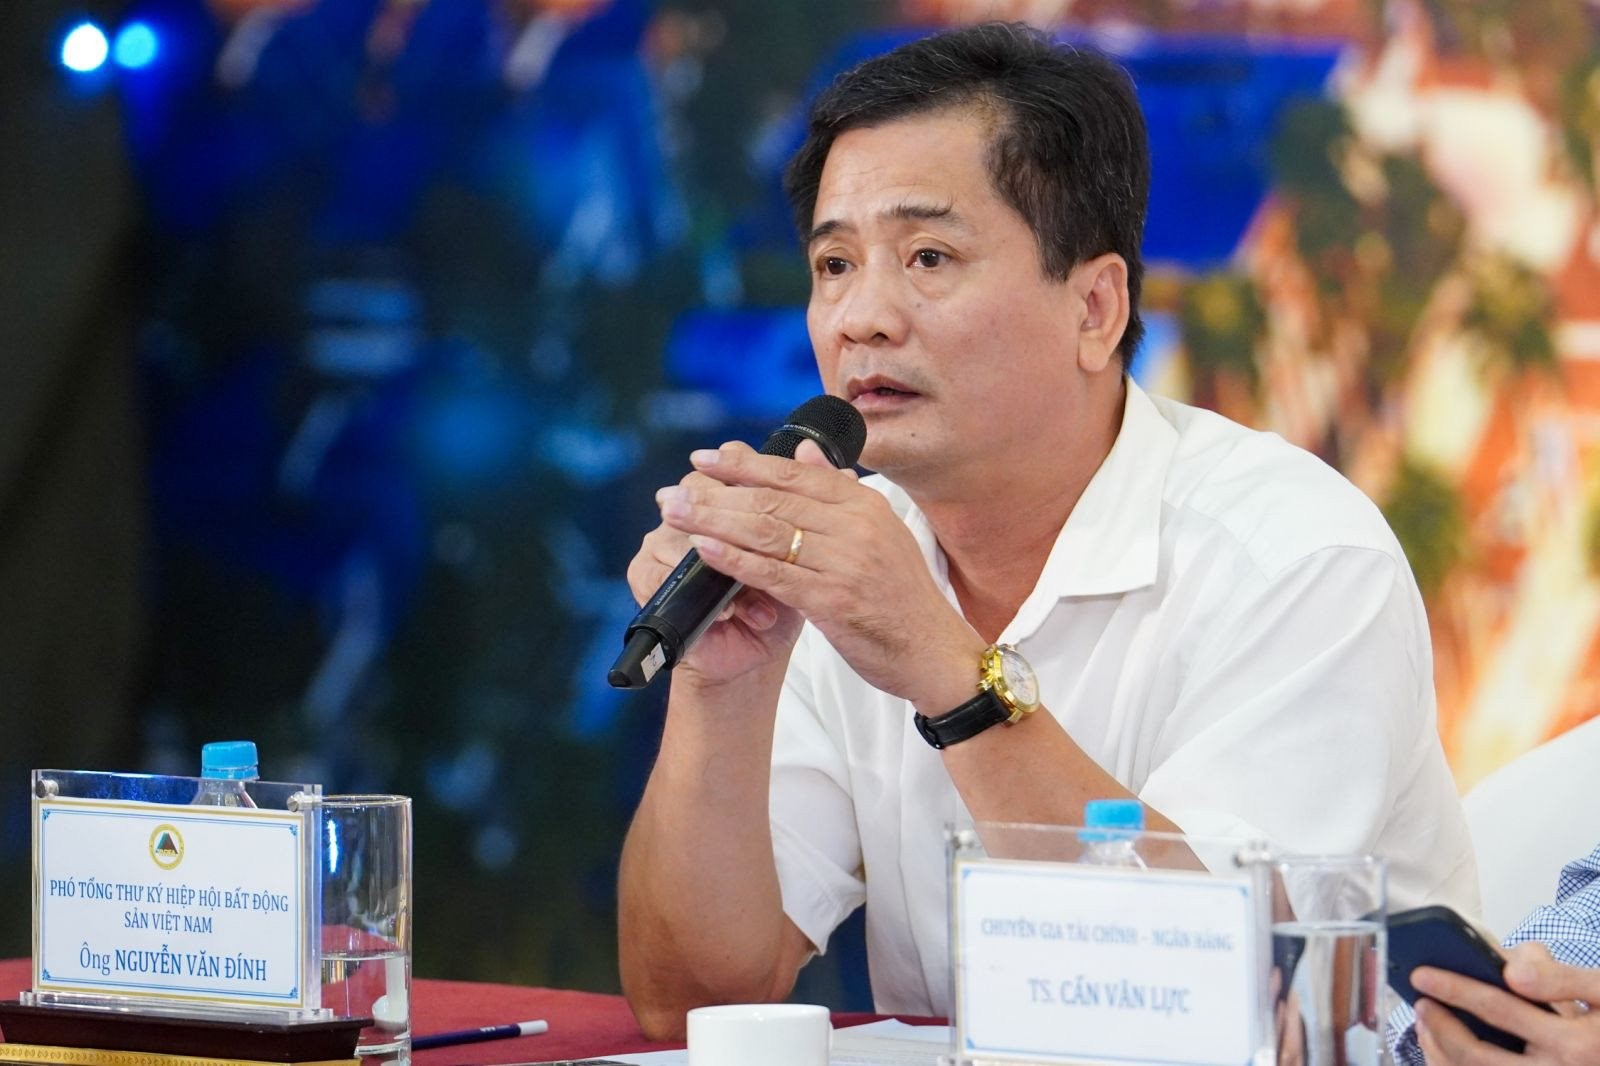 
Phó chủ tịch Hiệp hội Bất động sản Việt Nam - Ông Nguyễn Văn Đính đã có một vài chia sẻ về tiềm năng của BĐS Đà Nẵng trong thời gian tới
